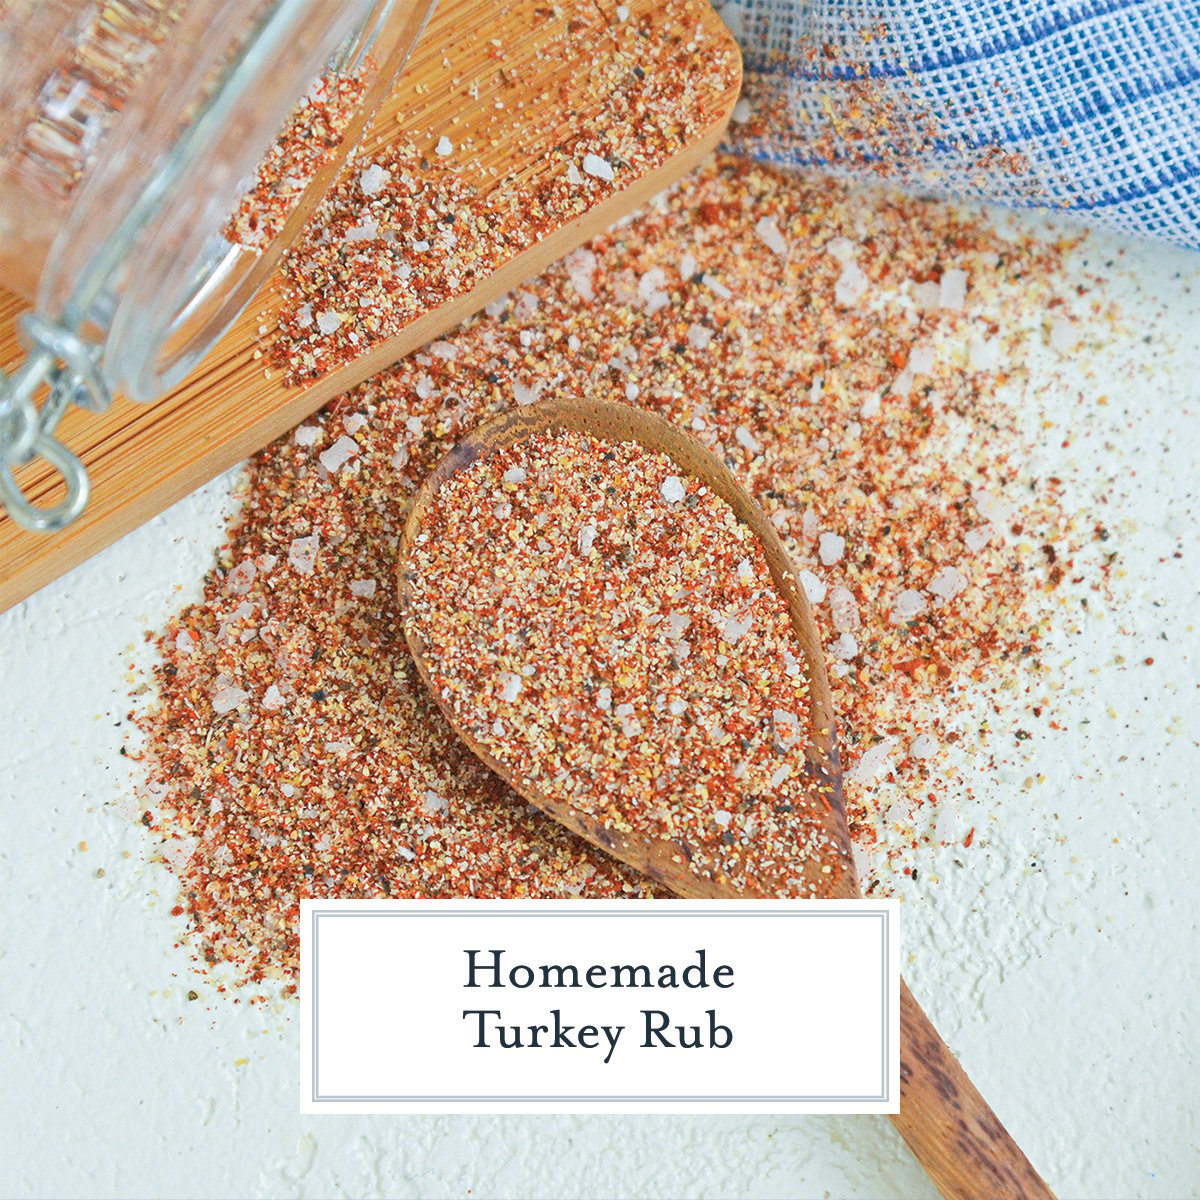 homemade turkey rub recipe with text overlay